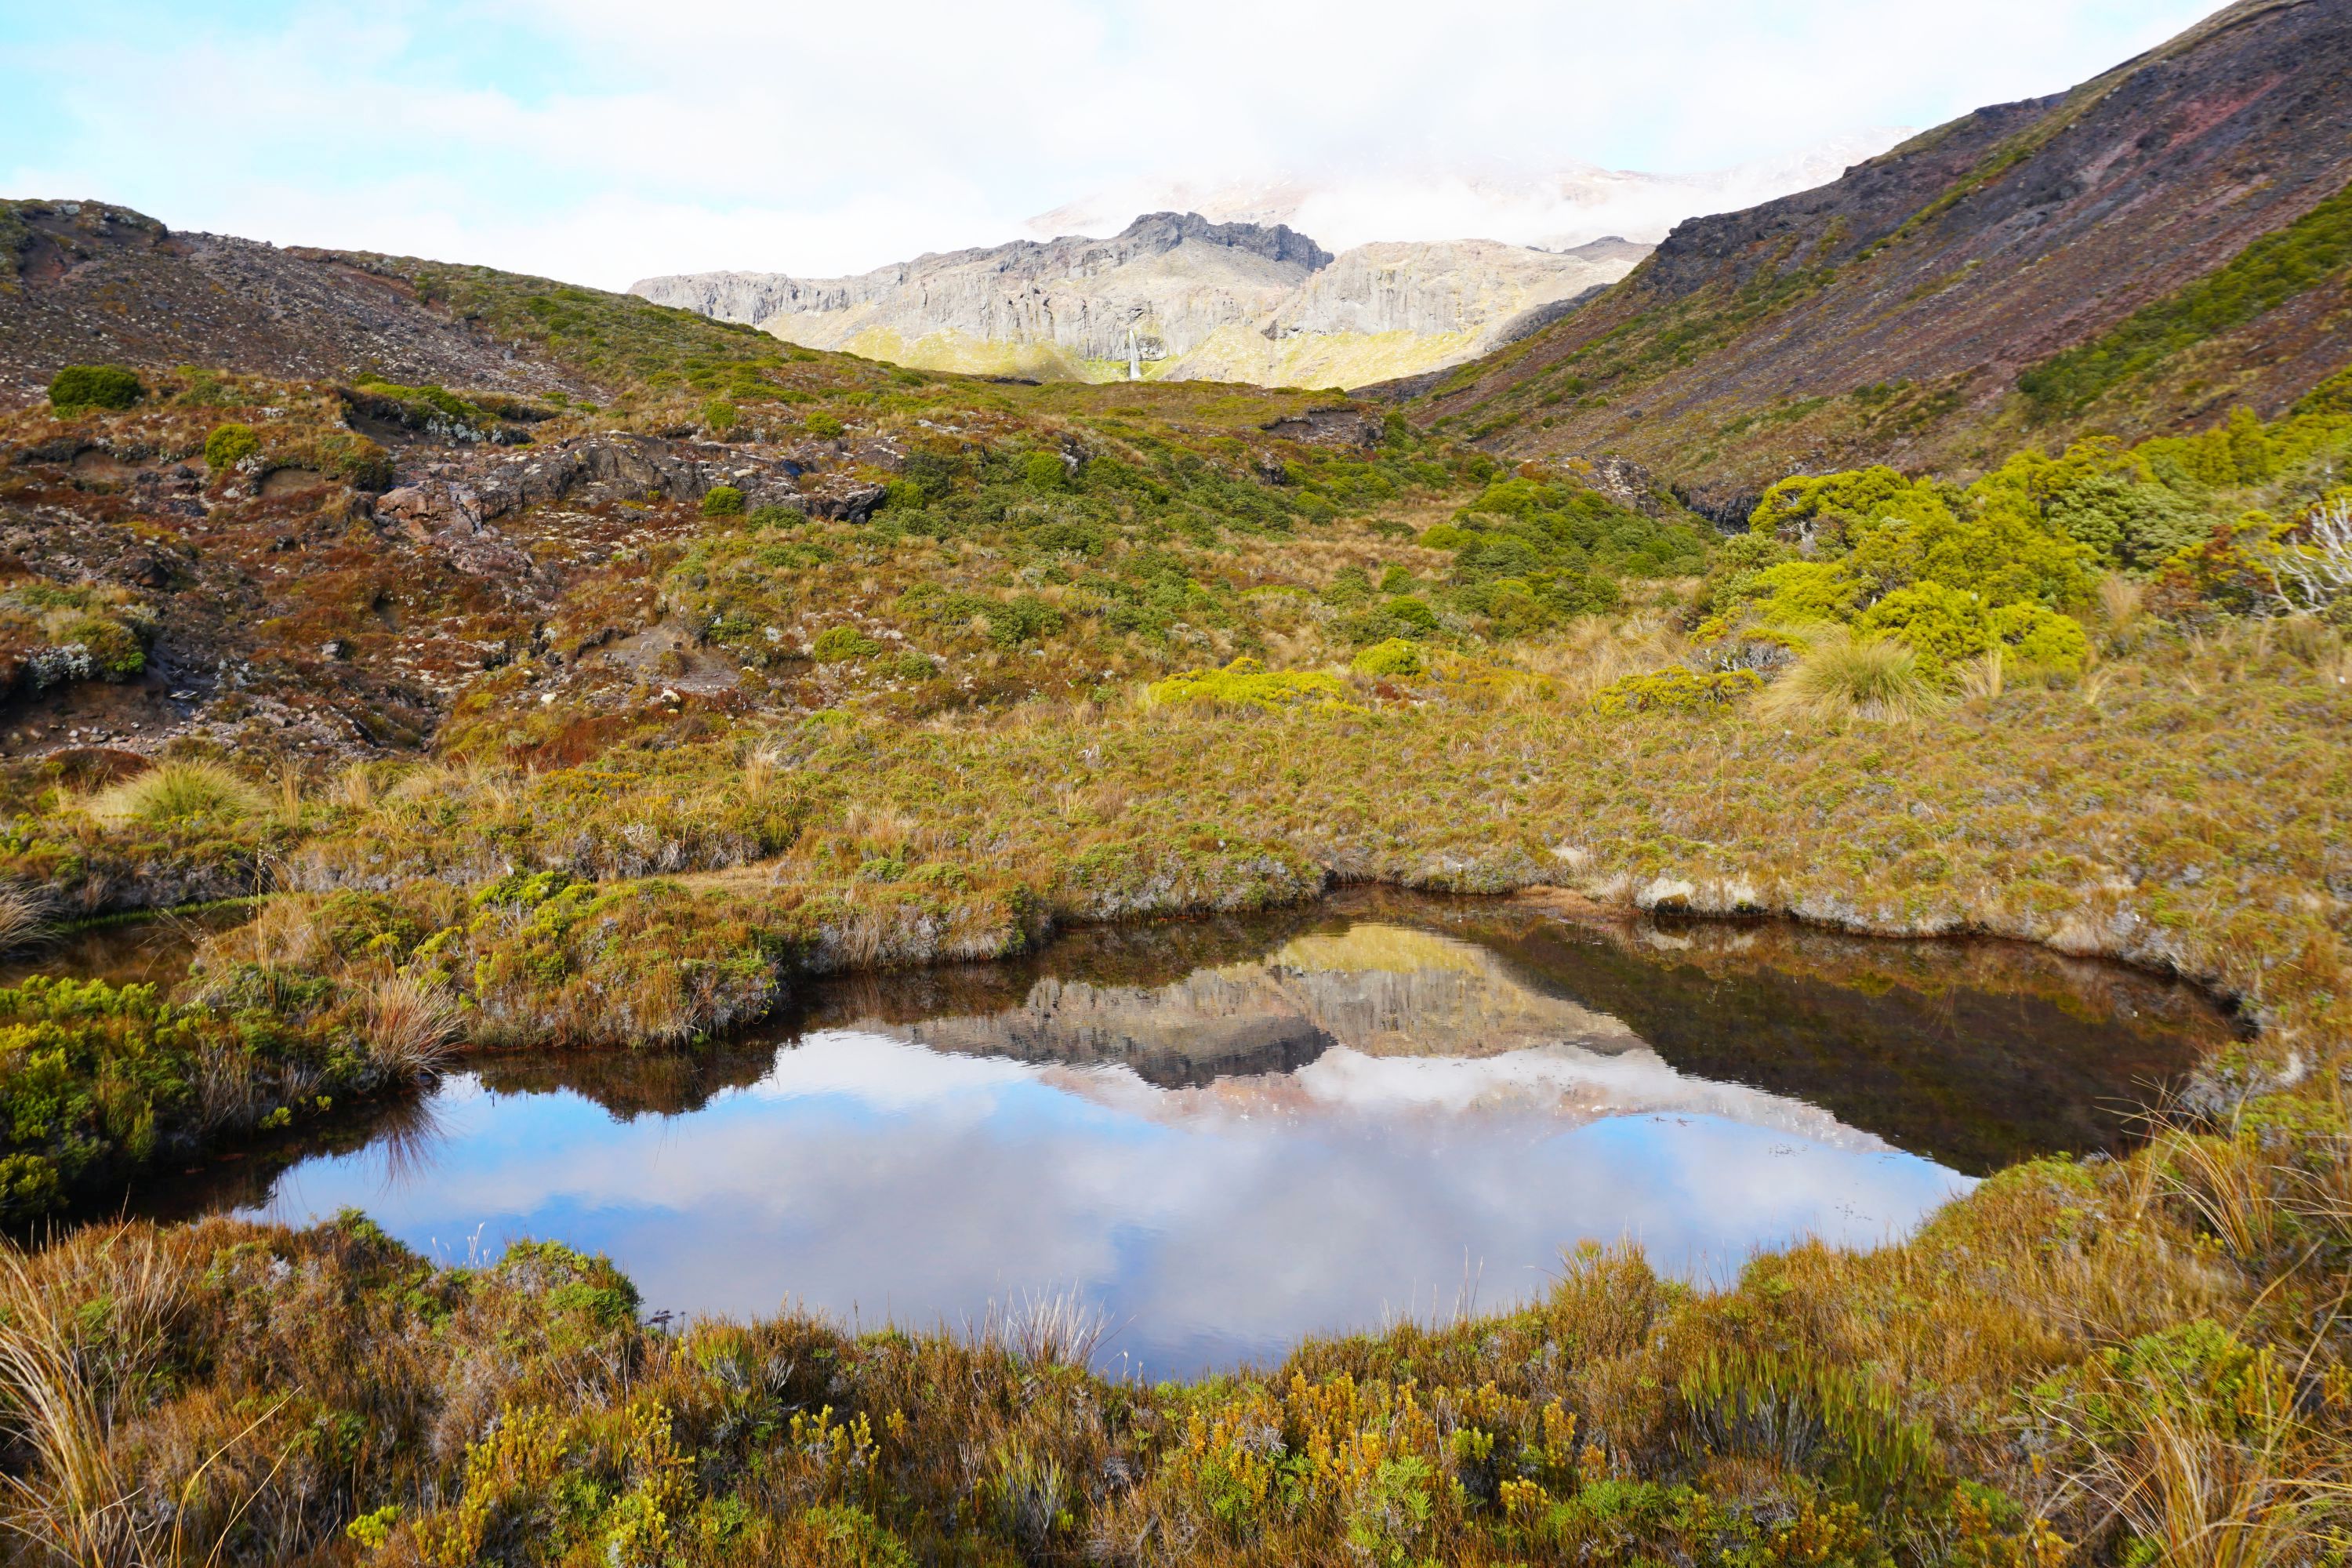 Tongariro Northern Circuit and Around the Mountain – Blyth Hut to Whakapapa